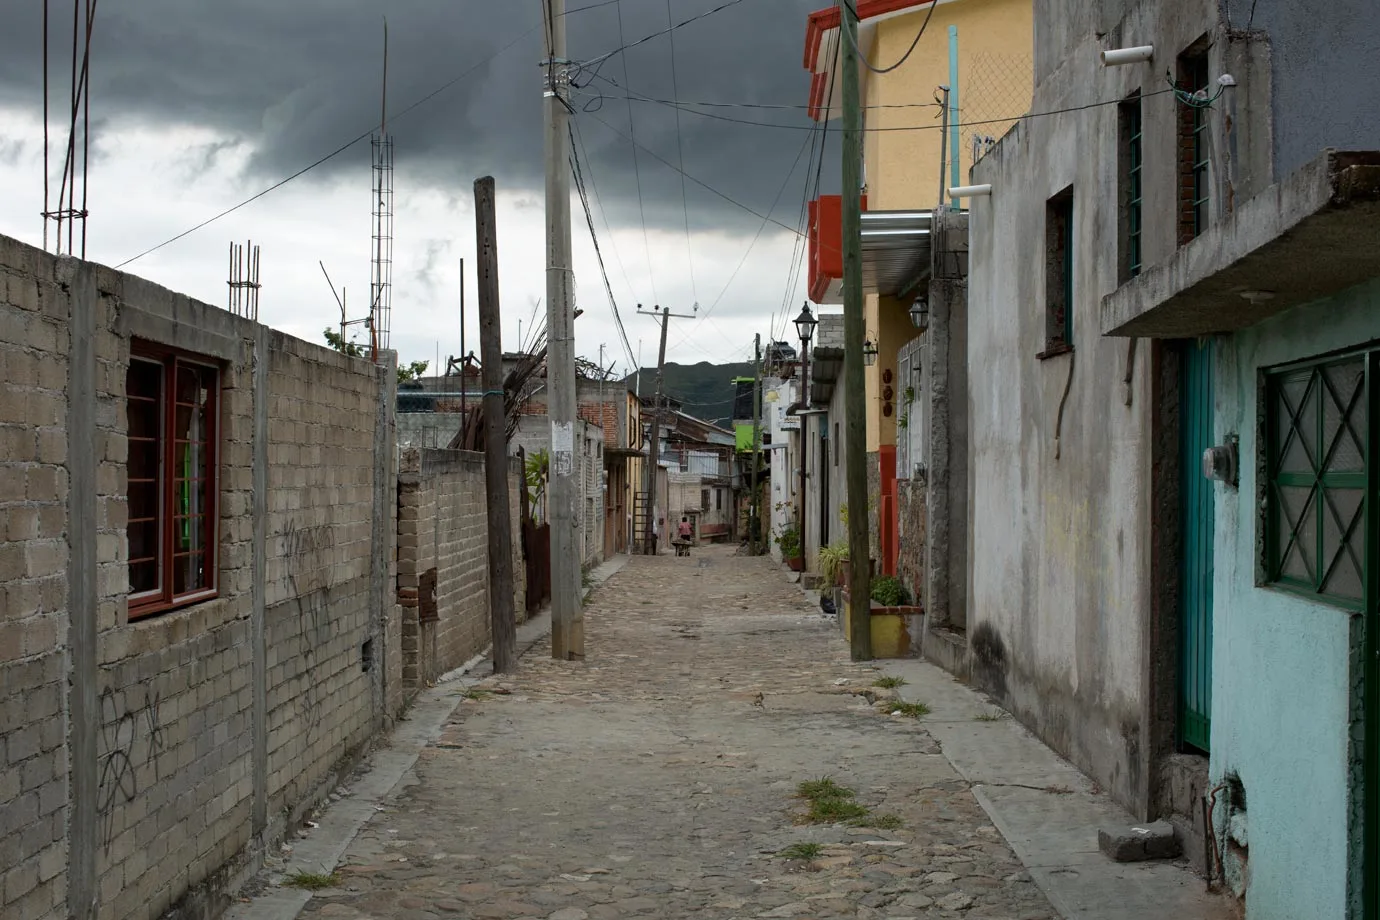 Peeking down the alley in Oaxaca